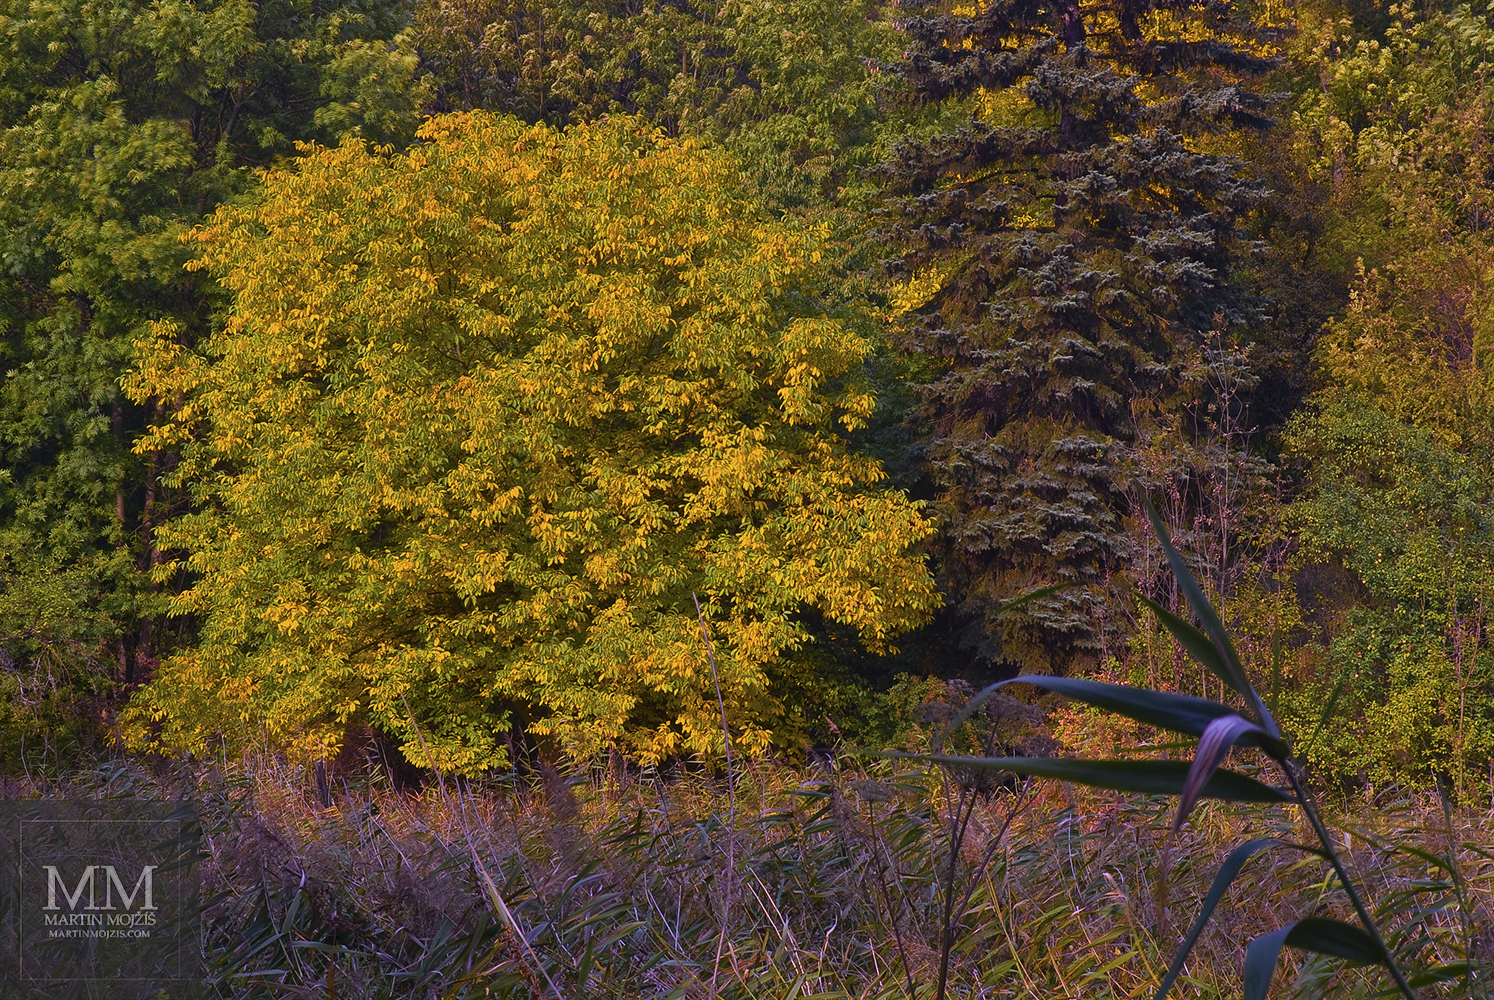 Barevné listy stromů a rostlin. Umělecká fotografie Martina Mojžíše s názvem VEDLE SEBE.